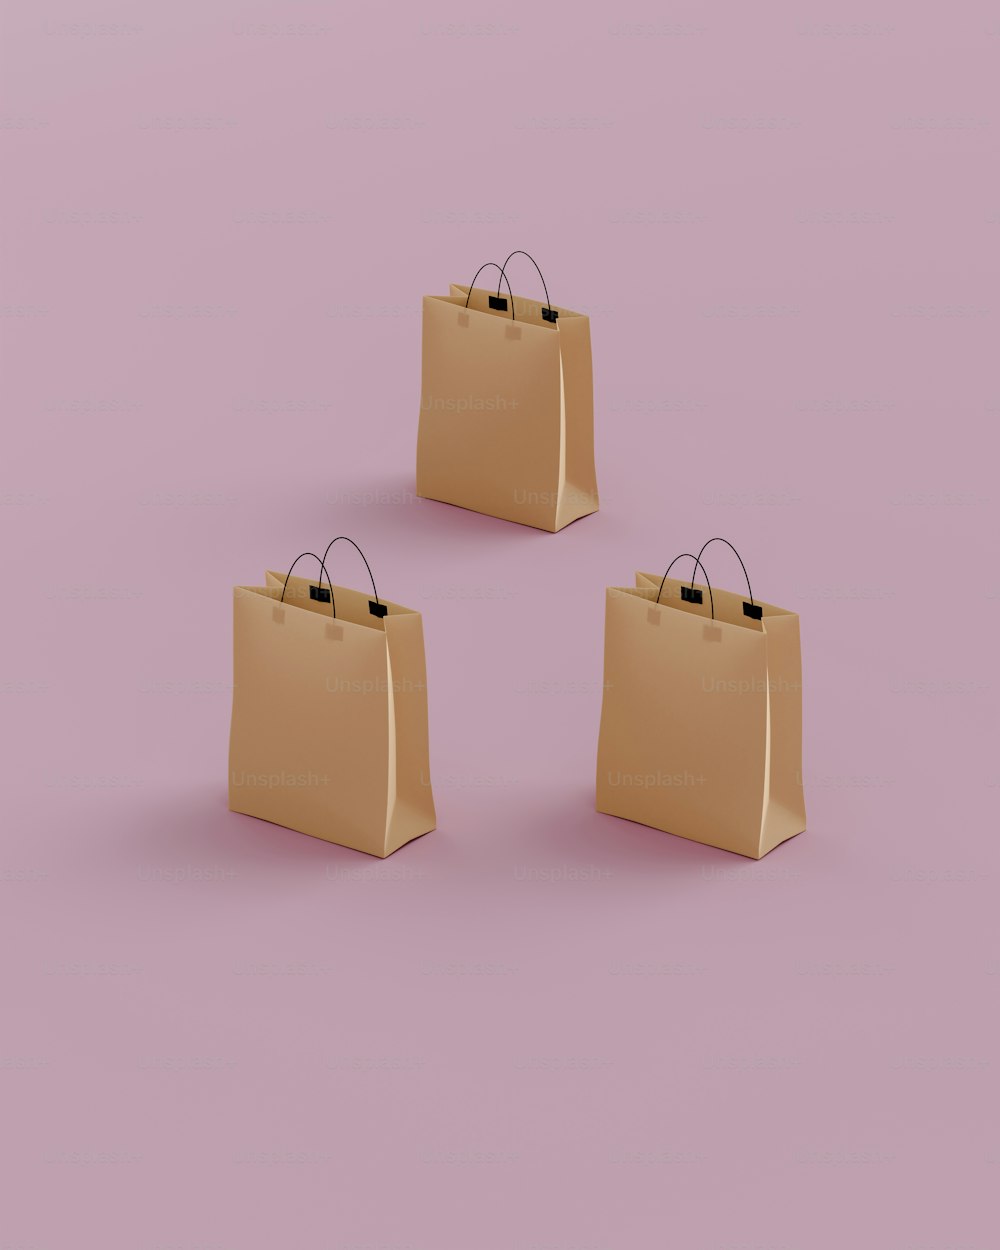 Trois sacs marron sur fond rose